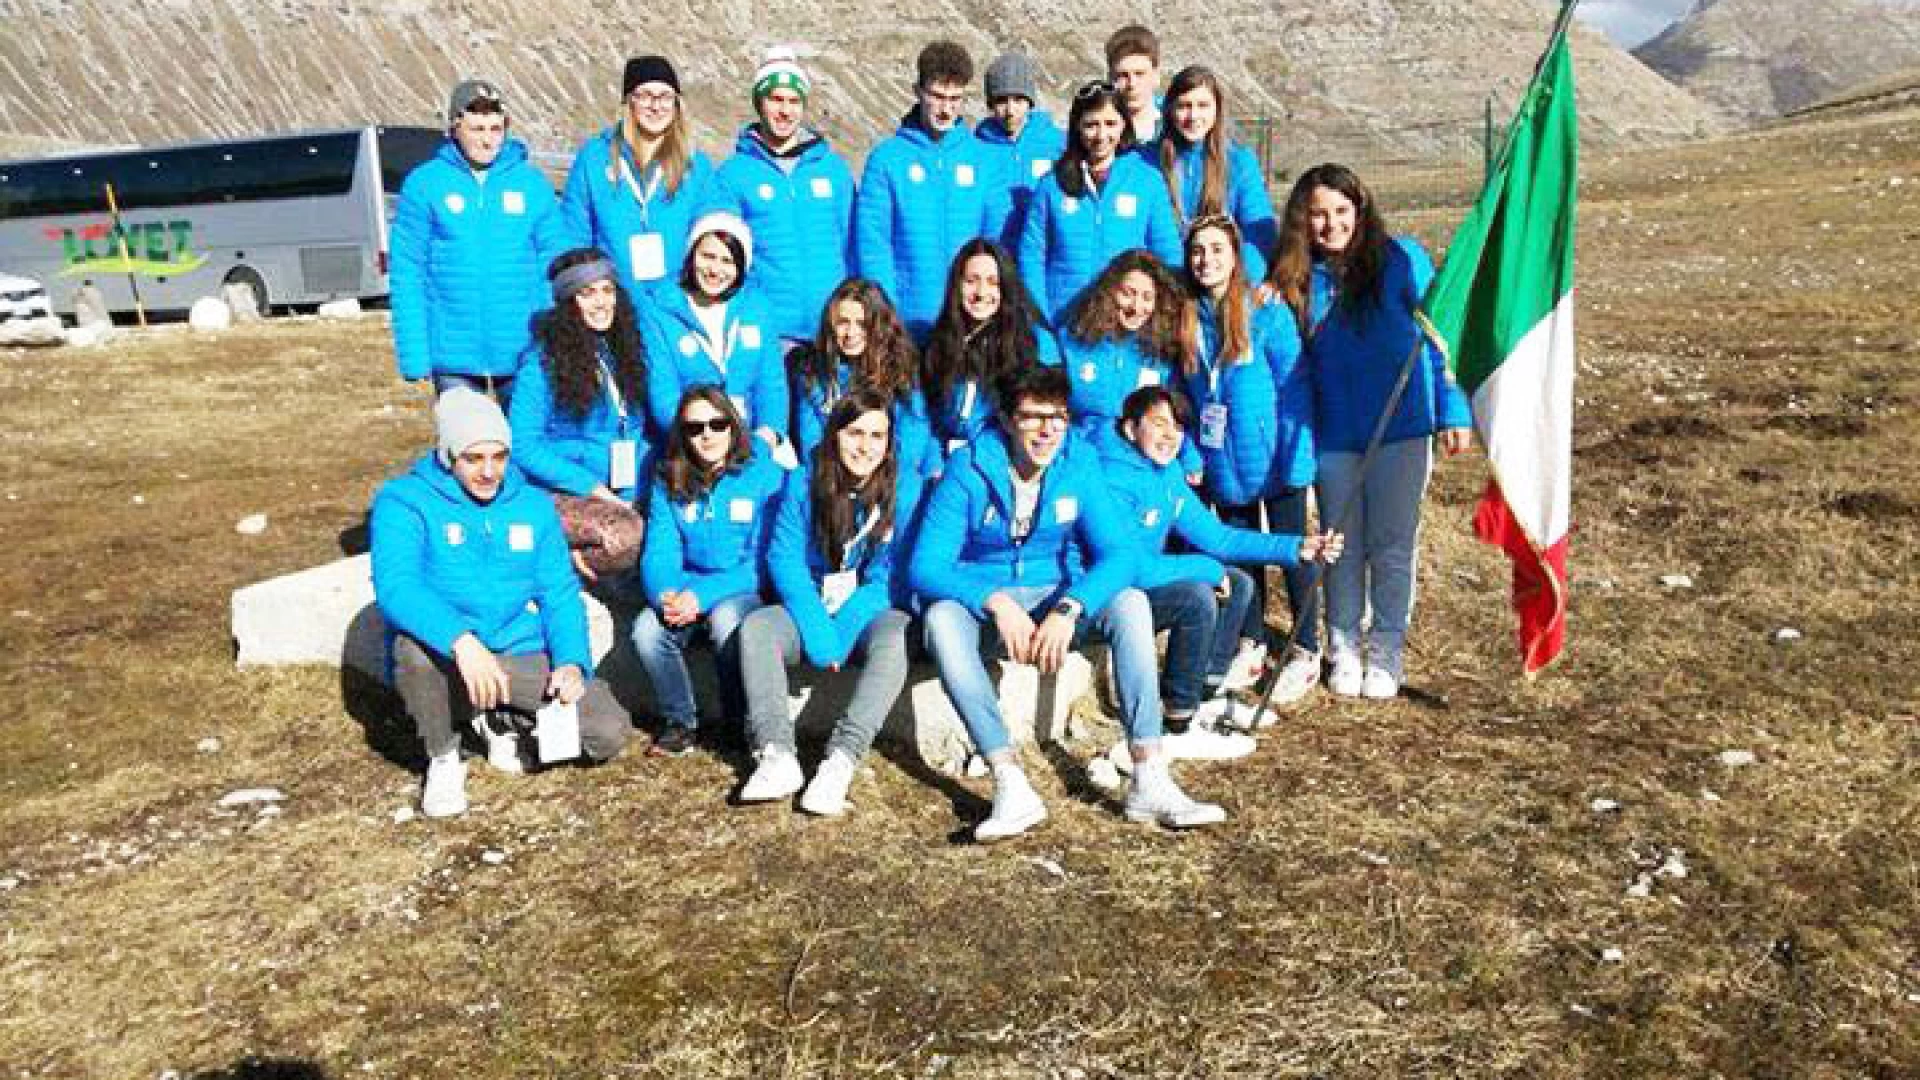 Castel Di Sangro: Mondiali studenteschi di sci. Gli alunni dell’Istituto Patini ai nastri di partenza. Ben 17 giovani atleti impegnati nelle gare.